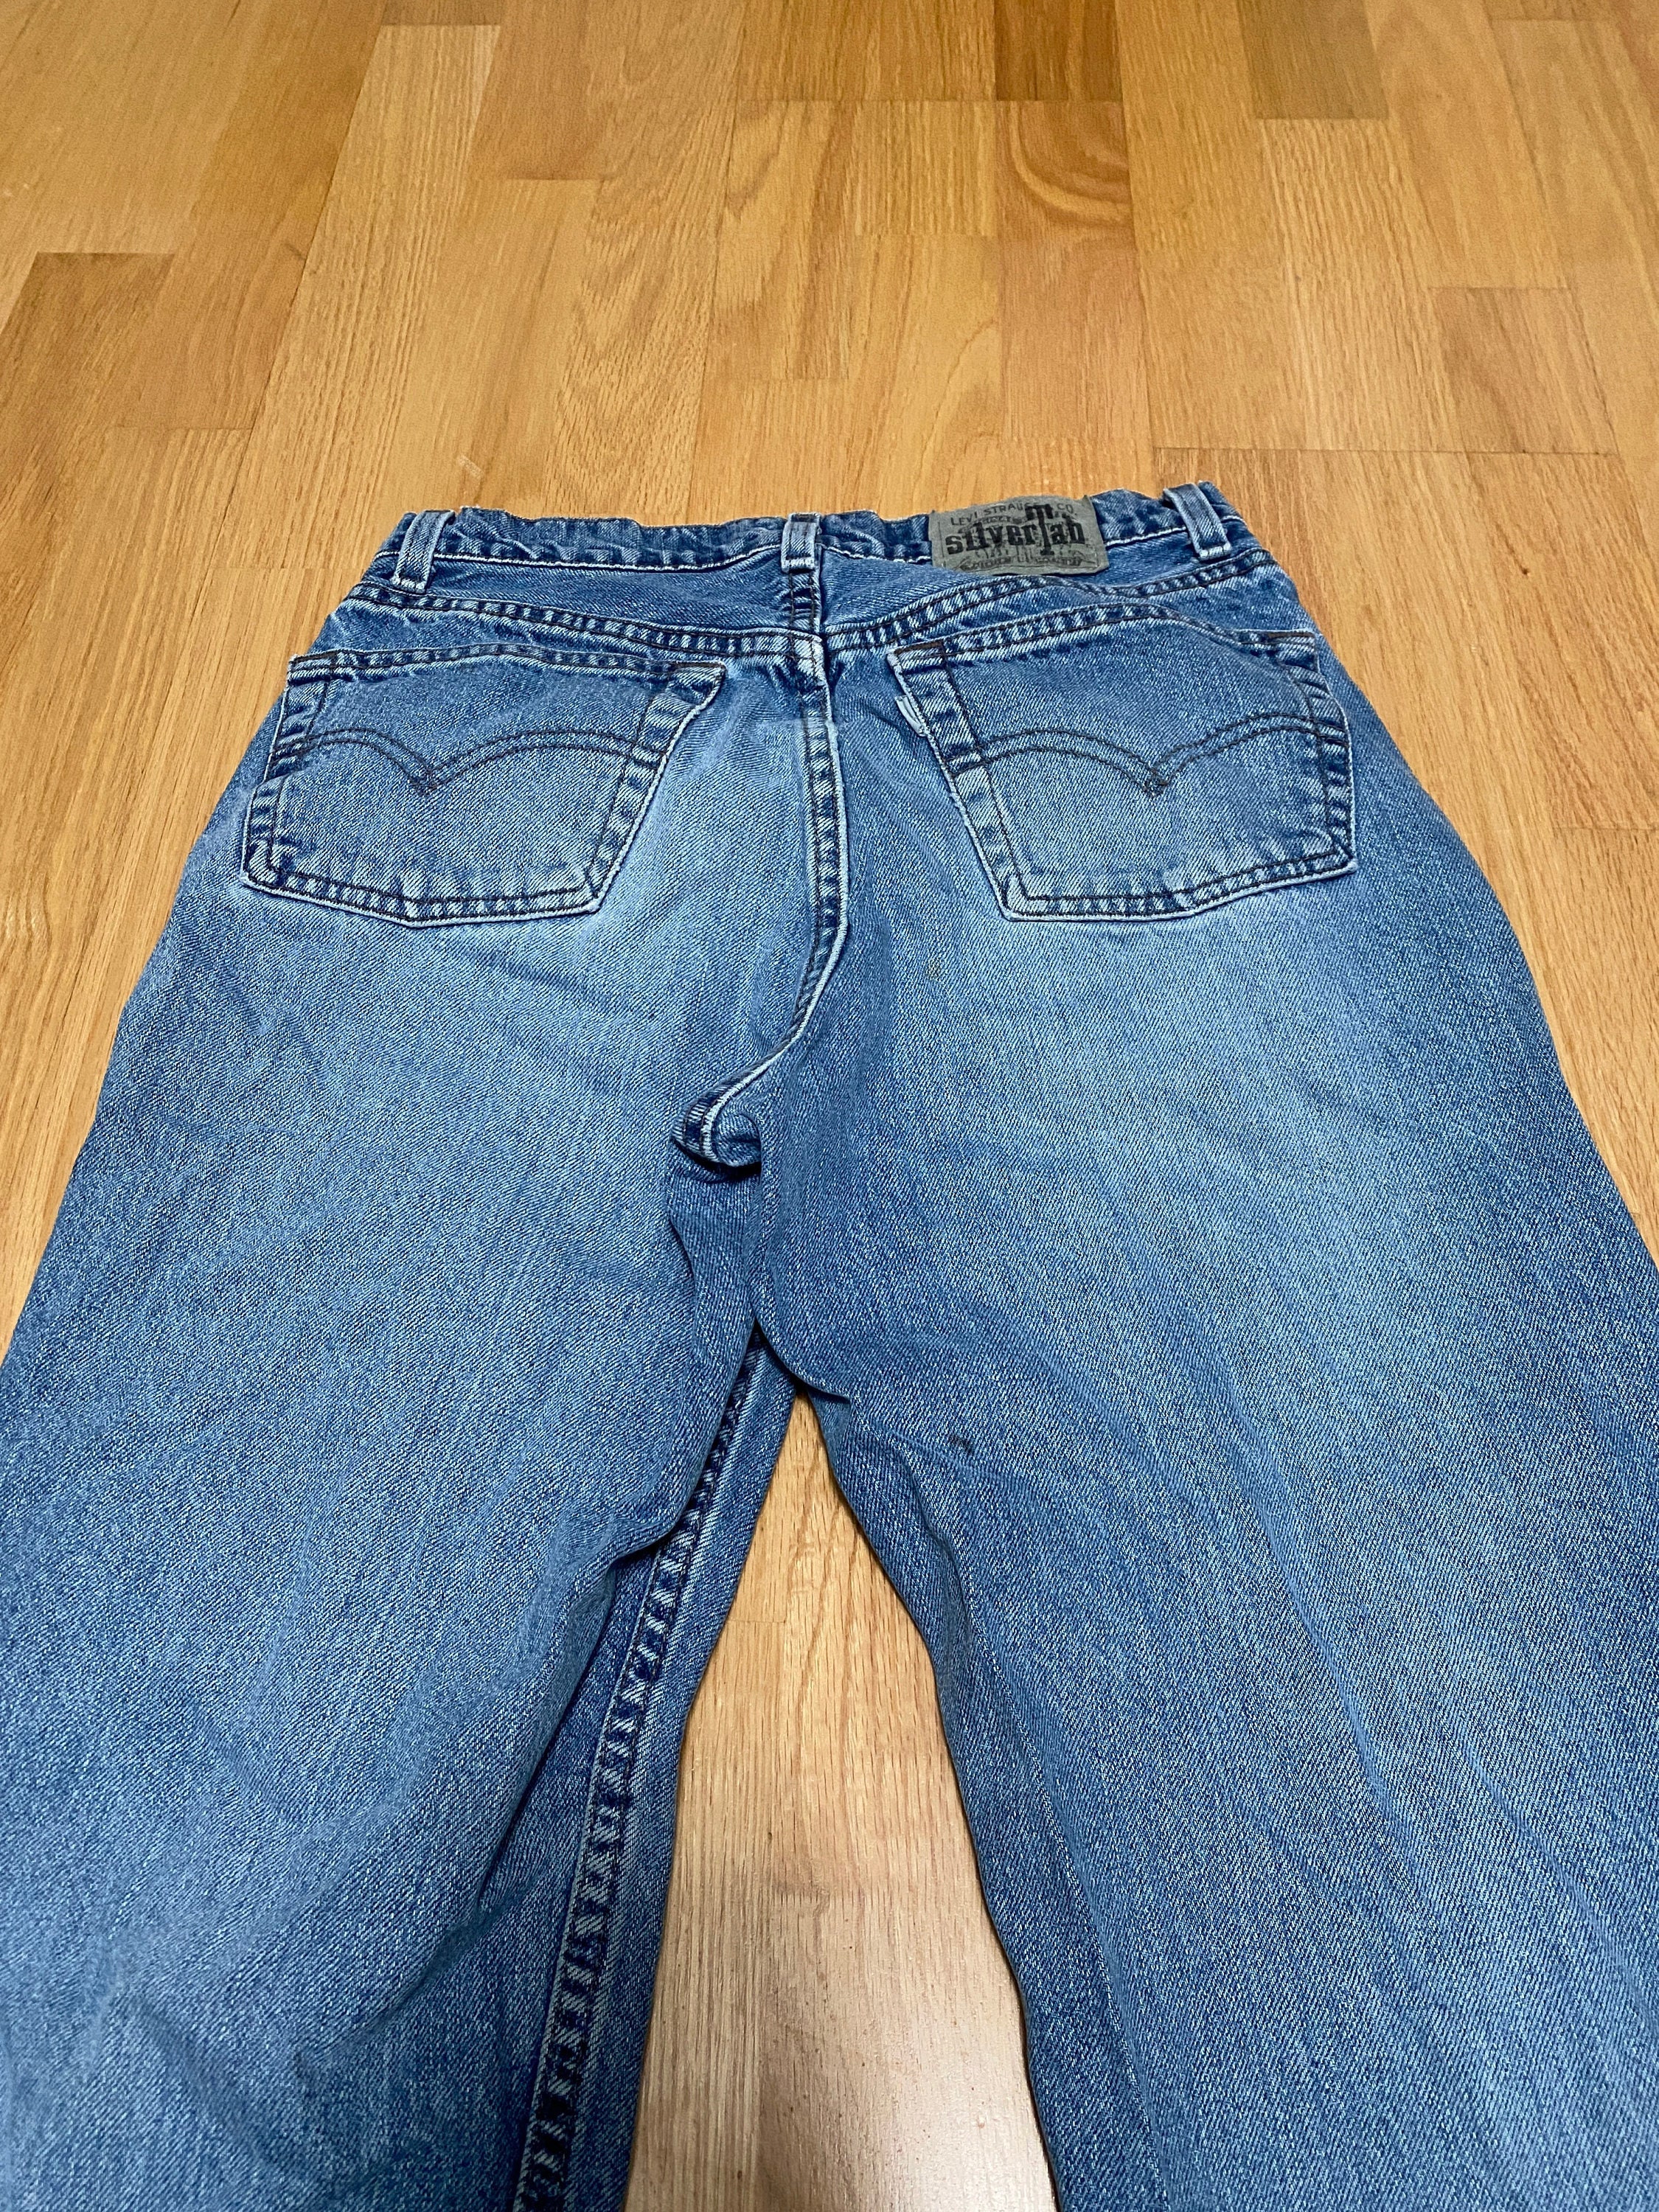 Vintage Gap Carpenter Shorts Size 33 Mens Denim Baggy Loose Fit Med Wash  2002